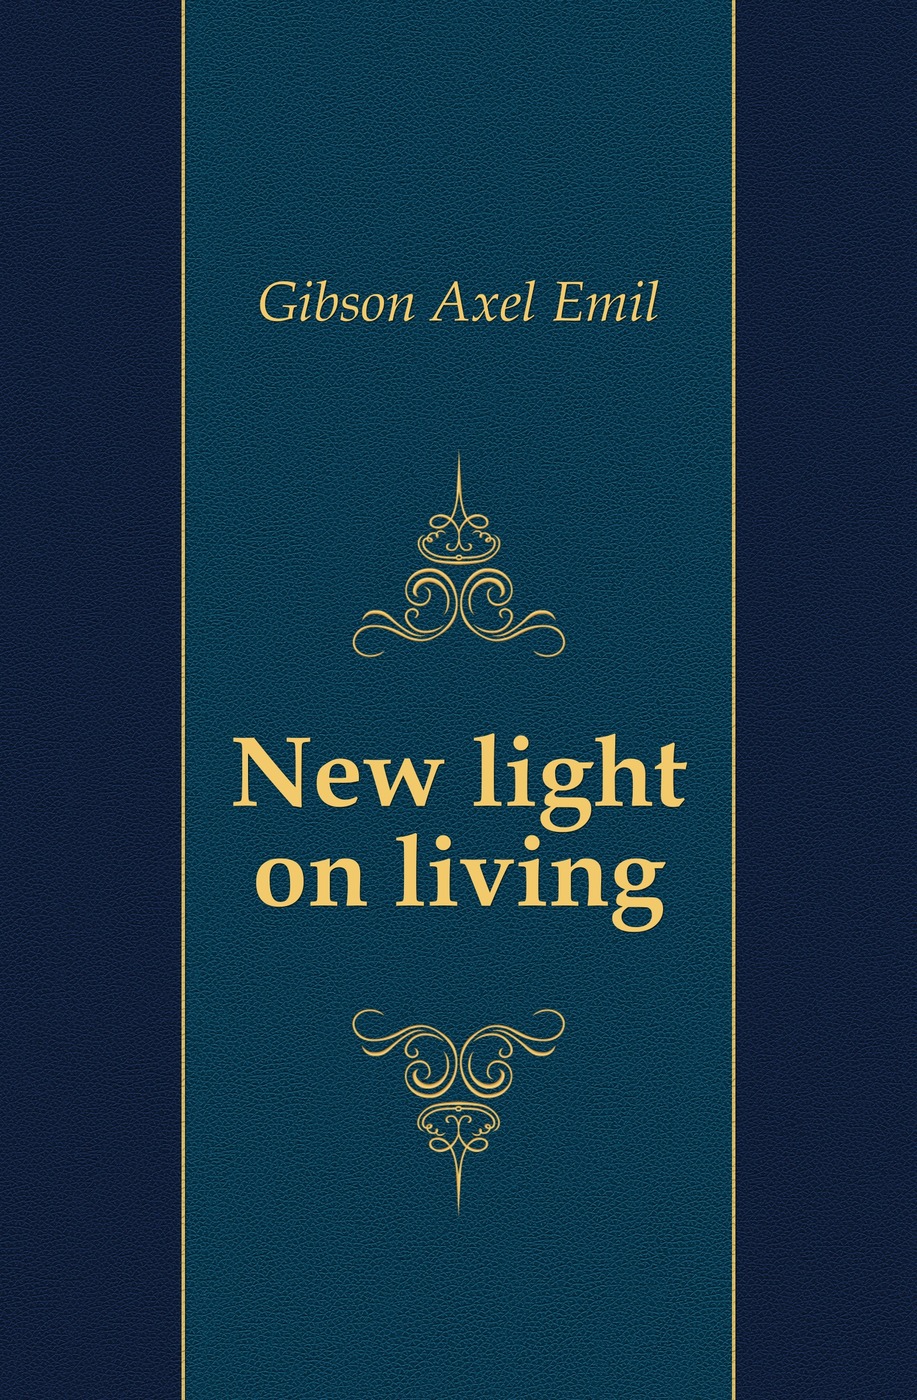 New light on living